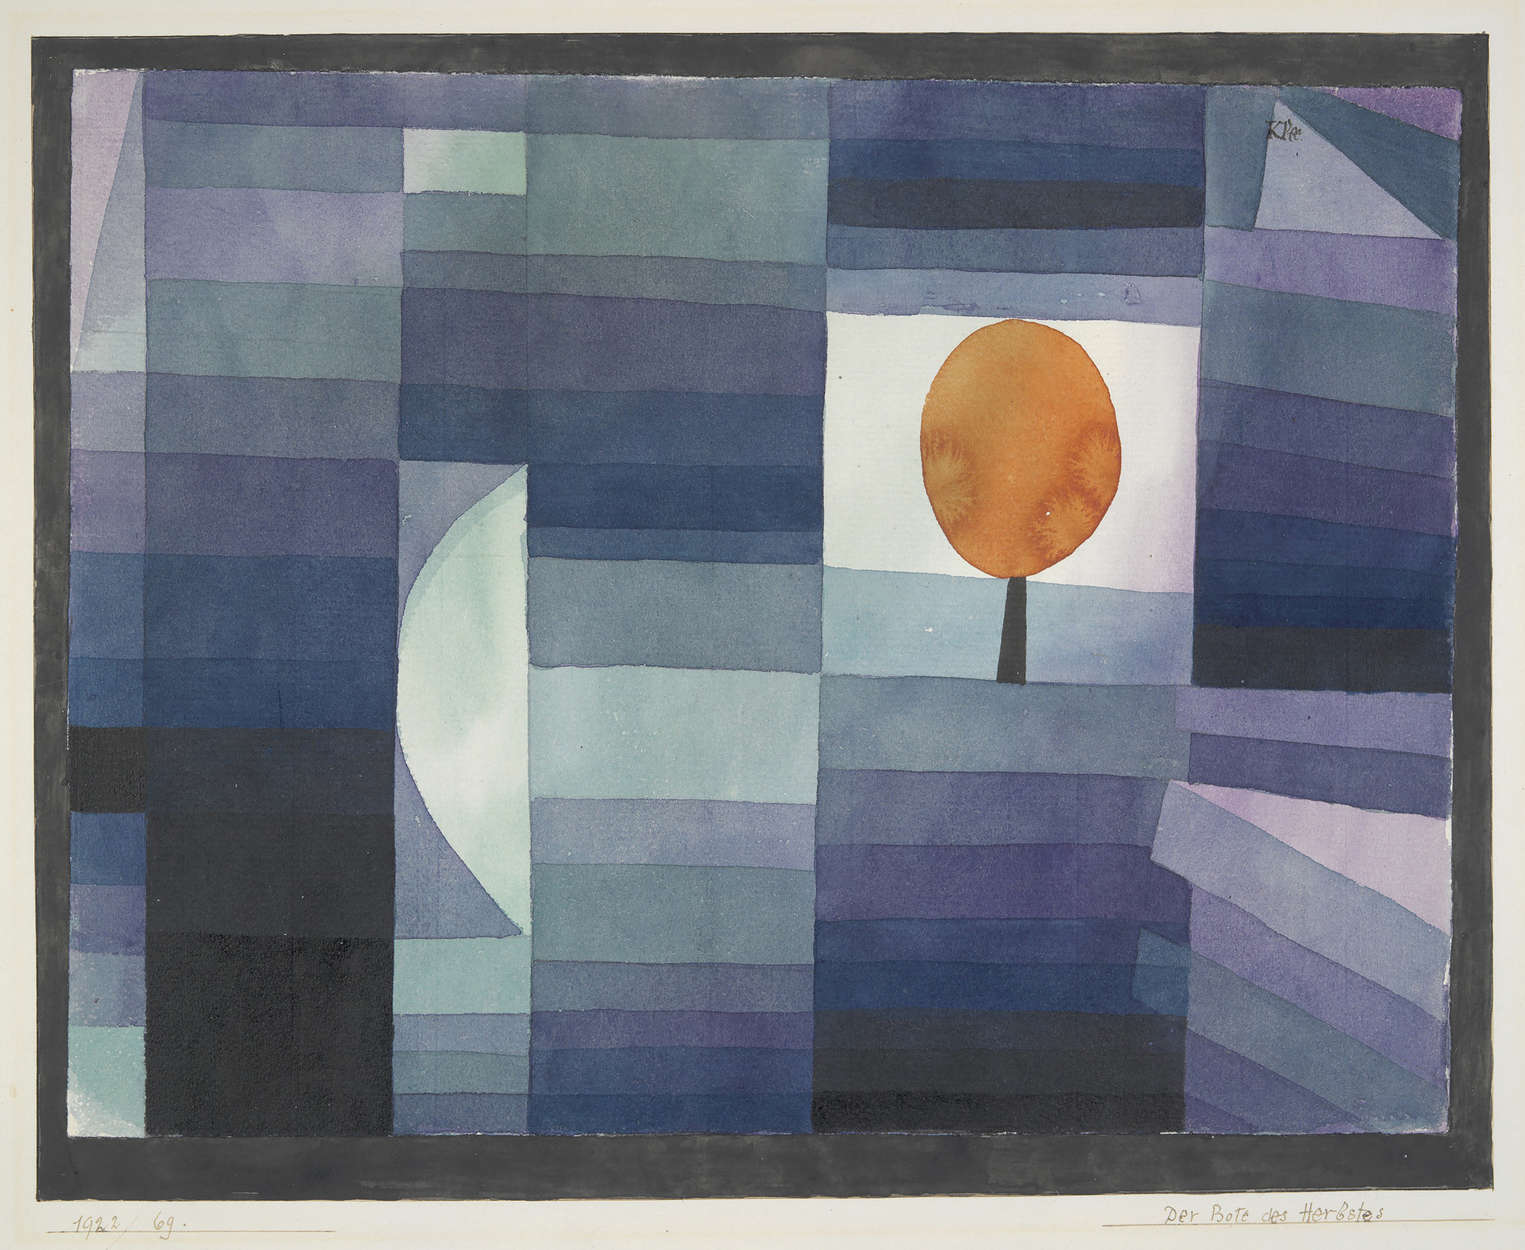             Il murale "Il messaggero dell'autunno" di Paul Klee
        